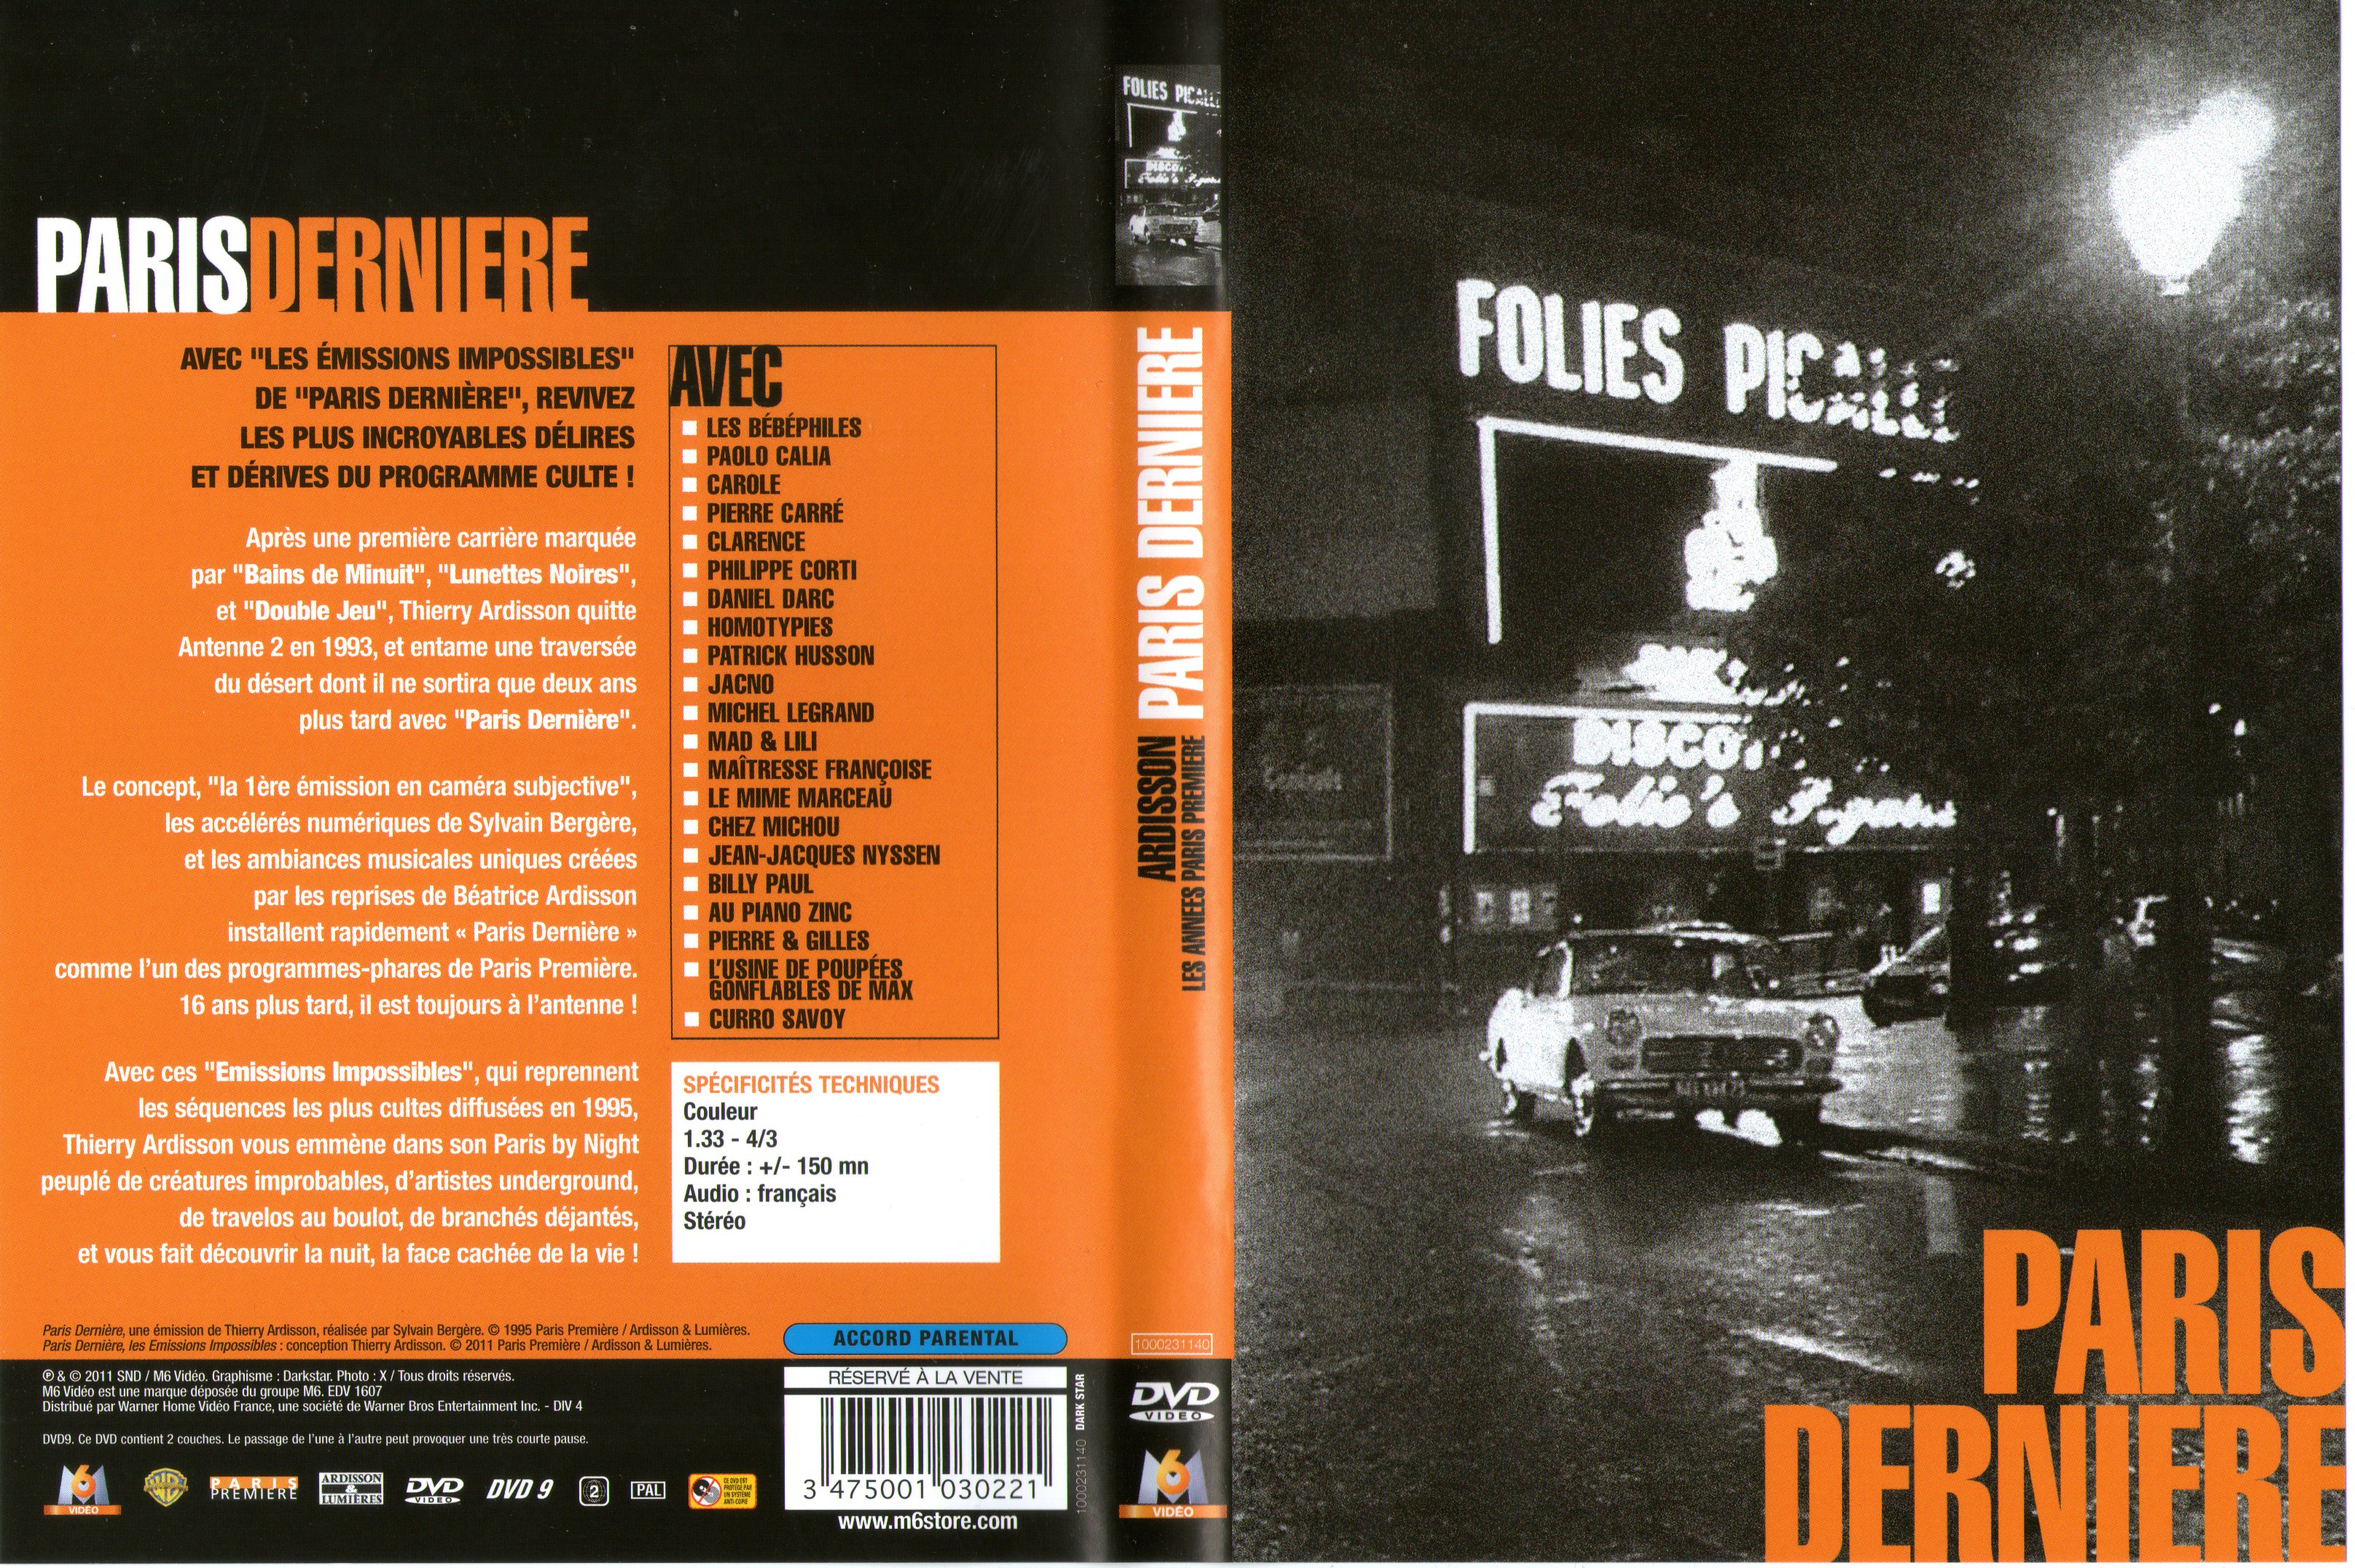 Jaquette DVD Paris dernire